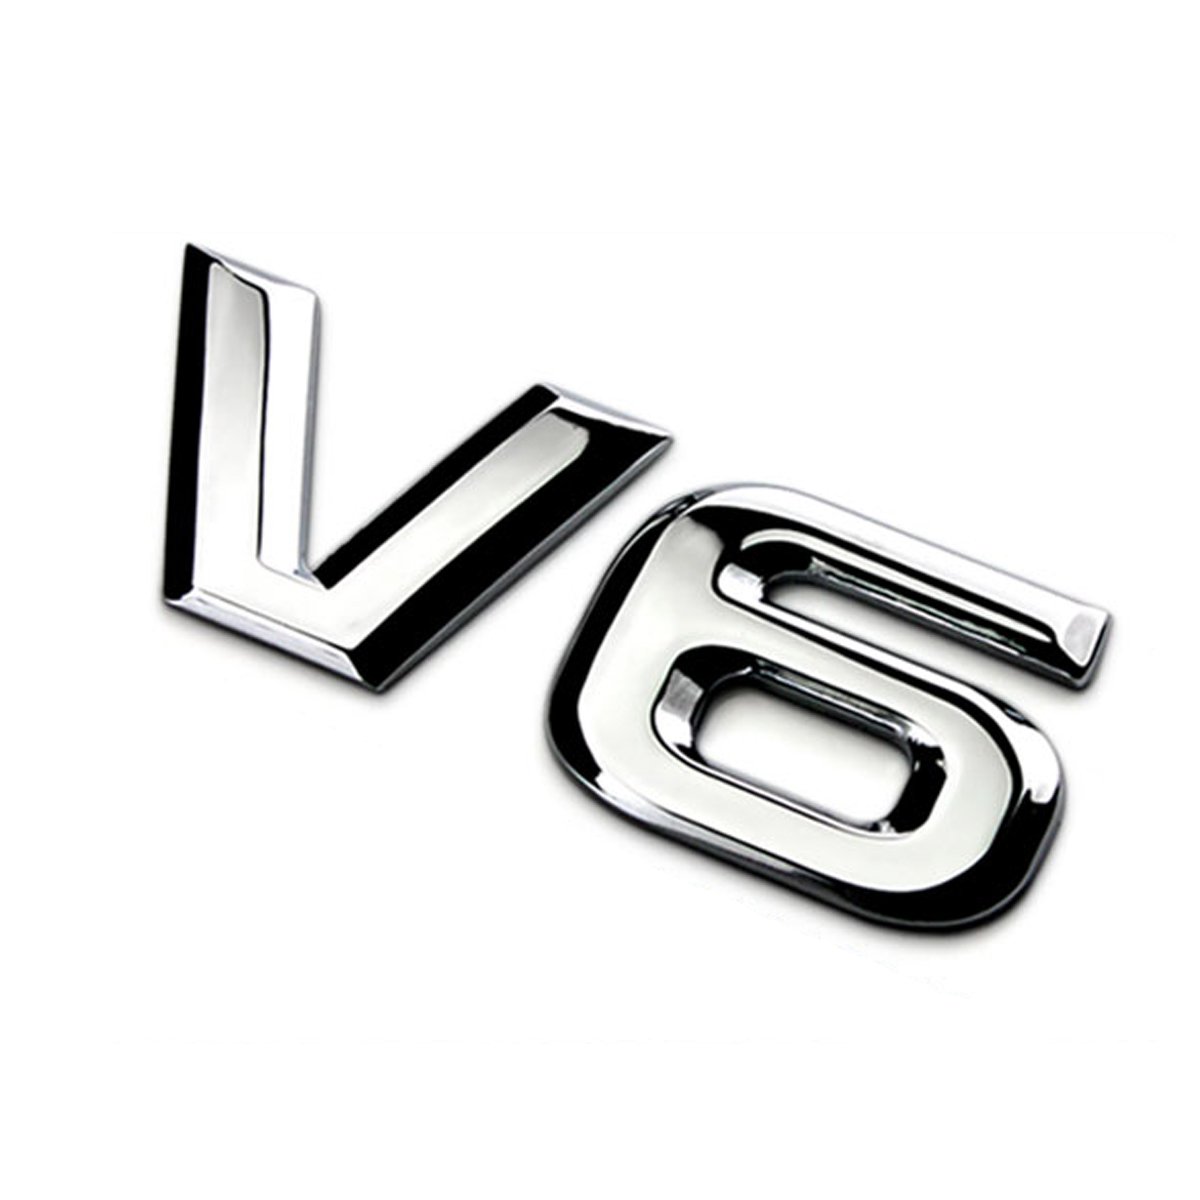 DSYCAR 3D Metall Auto Dekoration Metall Adhesive V6 Lkw Auto Abzeichen Emblem Aufkleber für Universal Cars Moto Bike Auto Styling Dekorative Zubehör (V6-Silber) von Dsycar